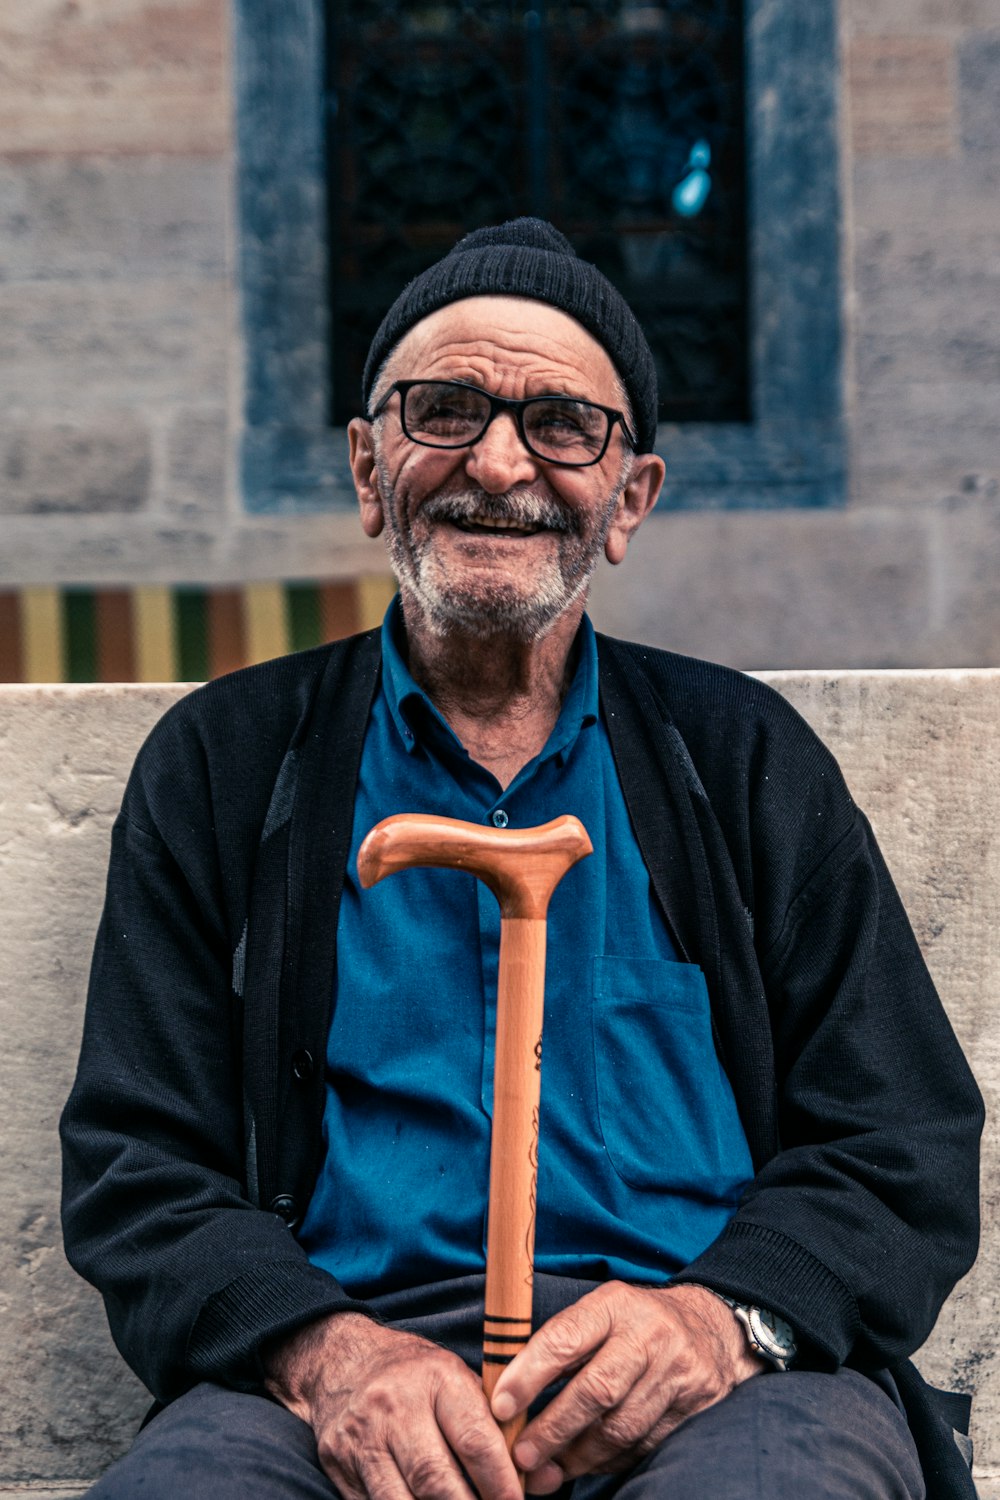 homme souriant assis sur un banc tenant une canne